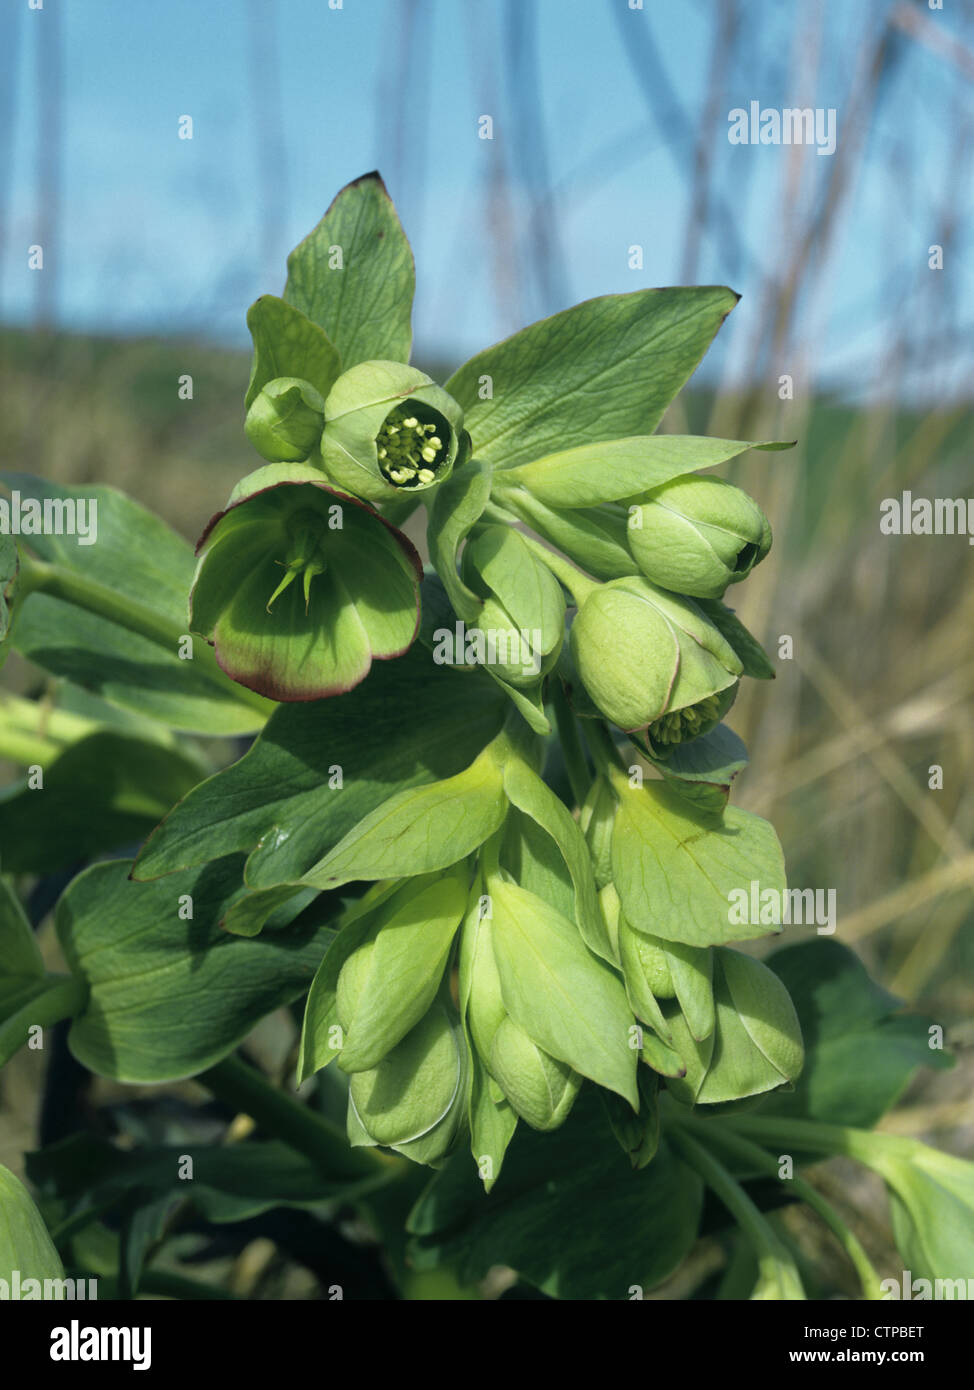 STINKING HELLEBORE Helleborus foetidus (Ranunculaceae) Stock Photo